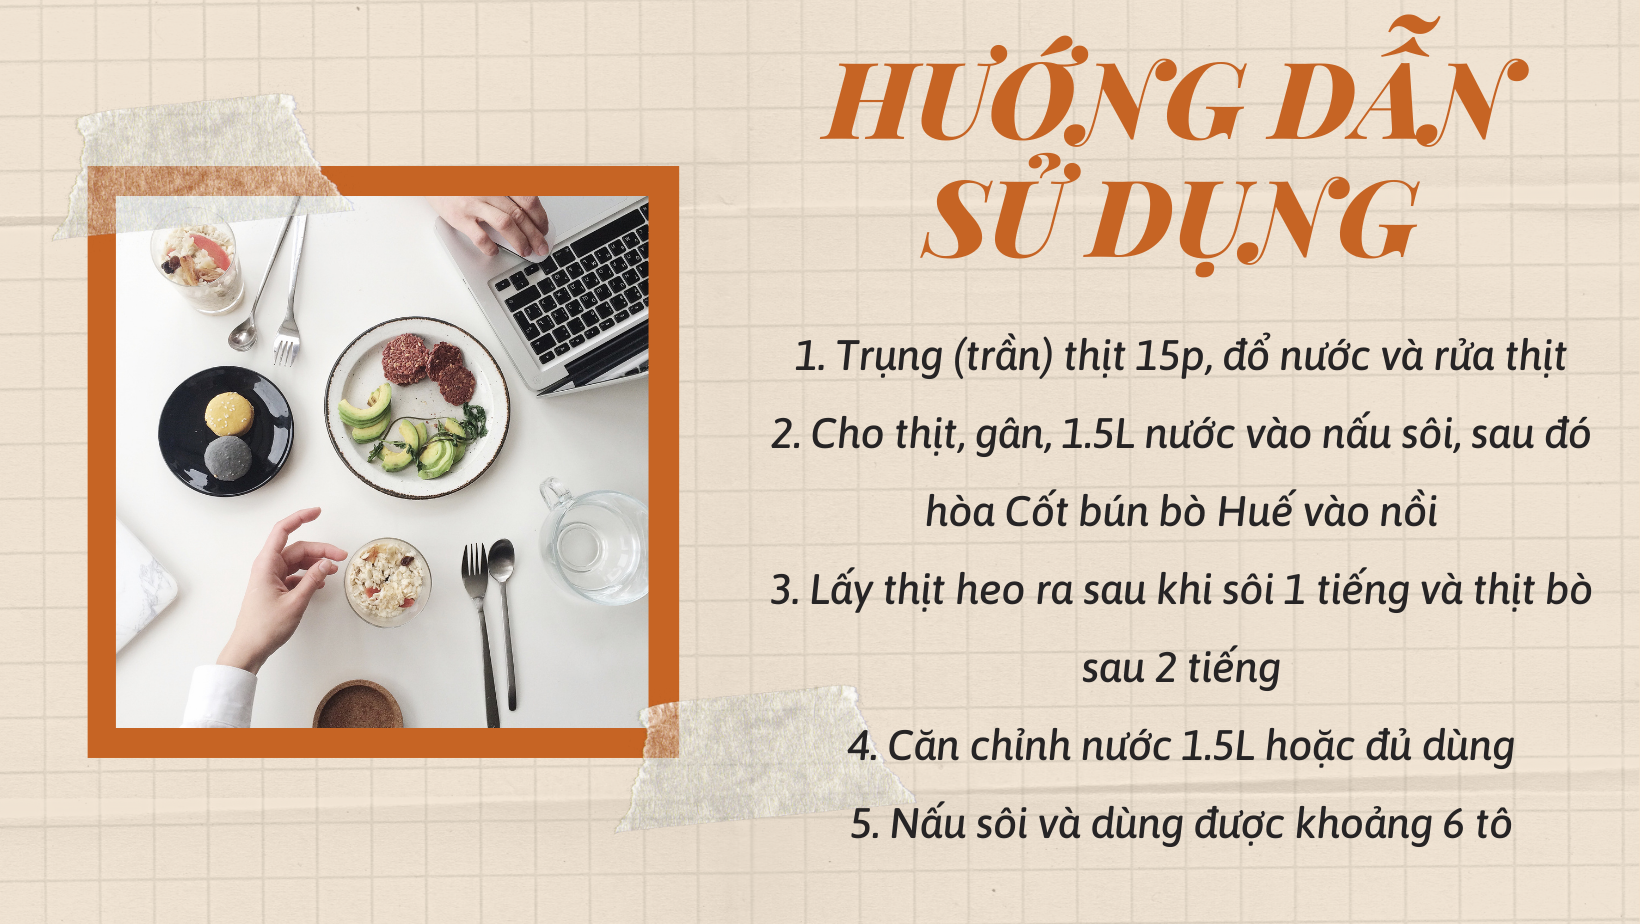 COMBO 2 gói Gia vị Cốt Bún Bò Huế Quốc Việt - 2 x 50g - gia vị nấu đủ 4 tô mỗi gói - VN10502